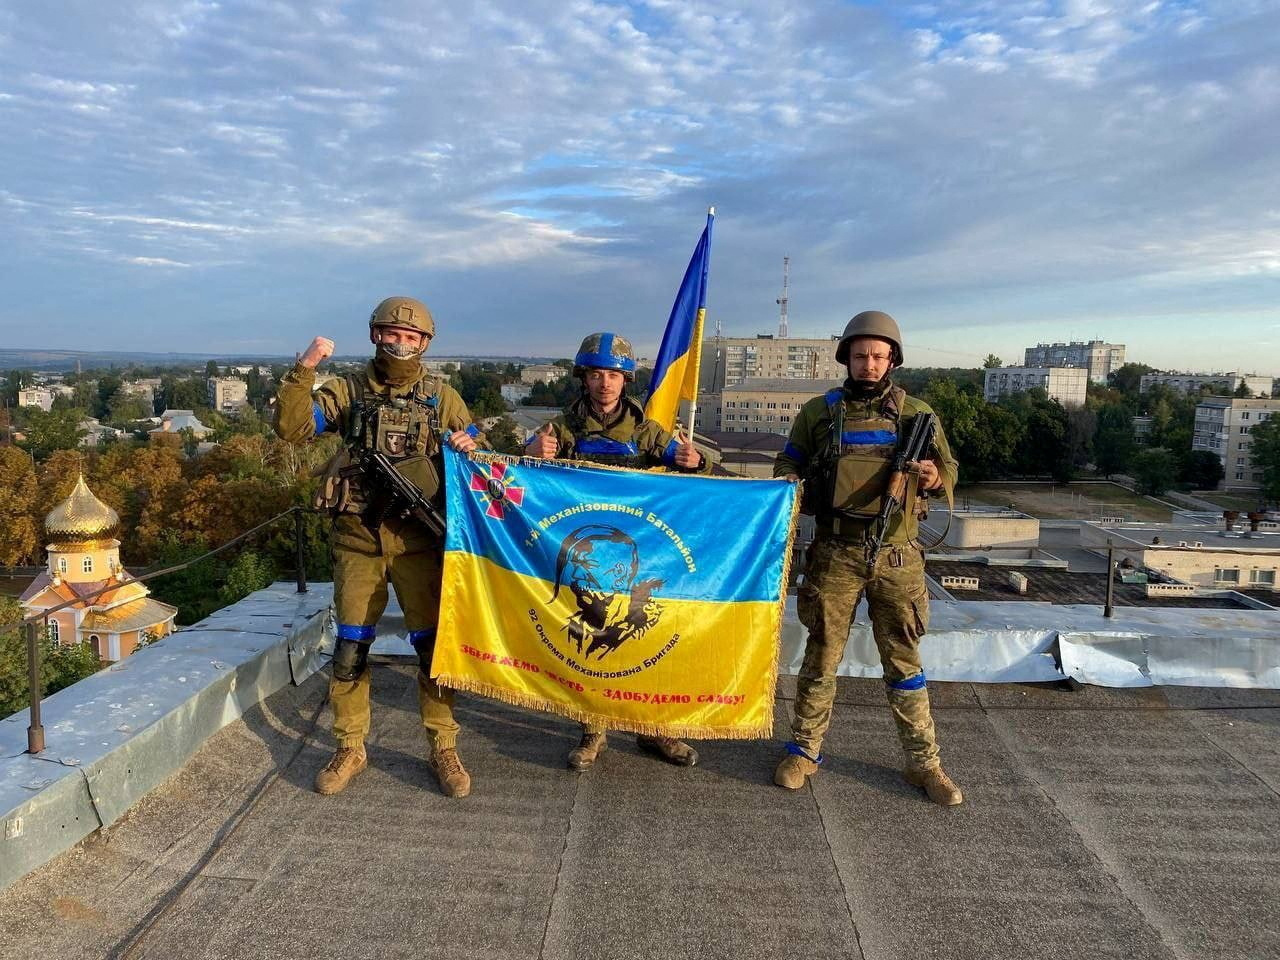 Chiến sự Ukraine ngày 200: Nga tiếp tục rút khỏi Kharkiv?